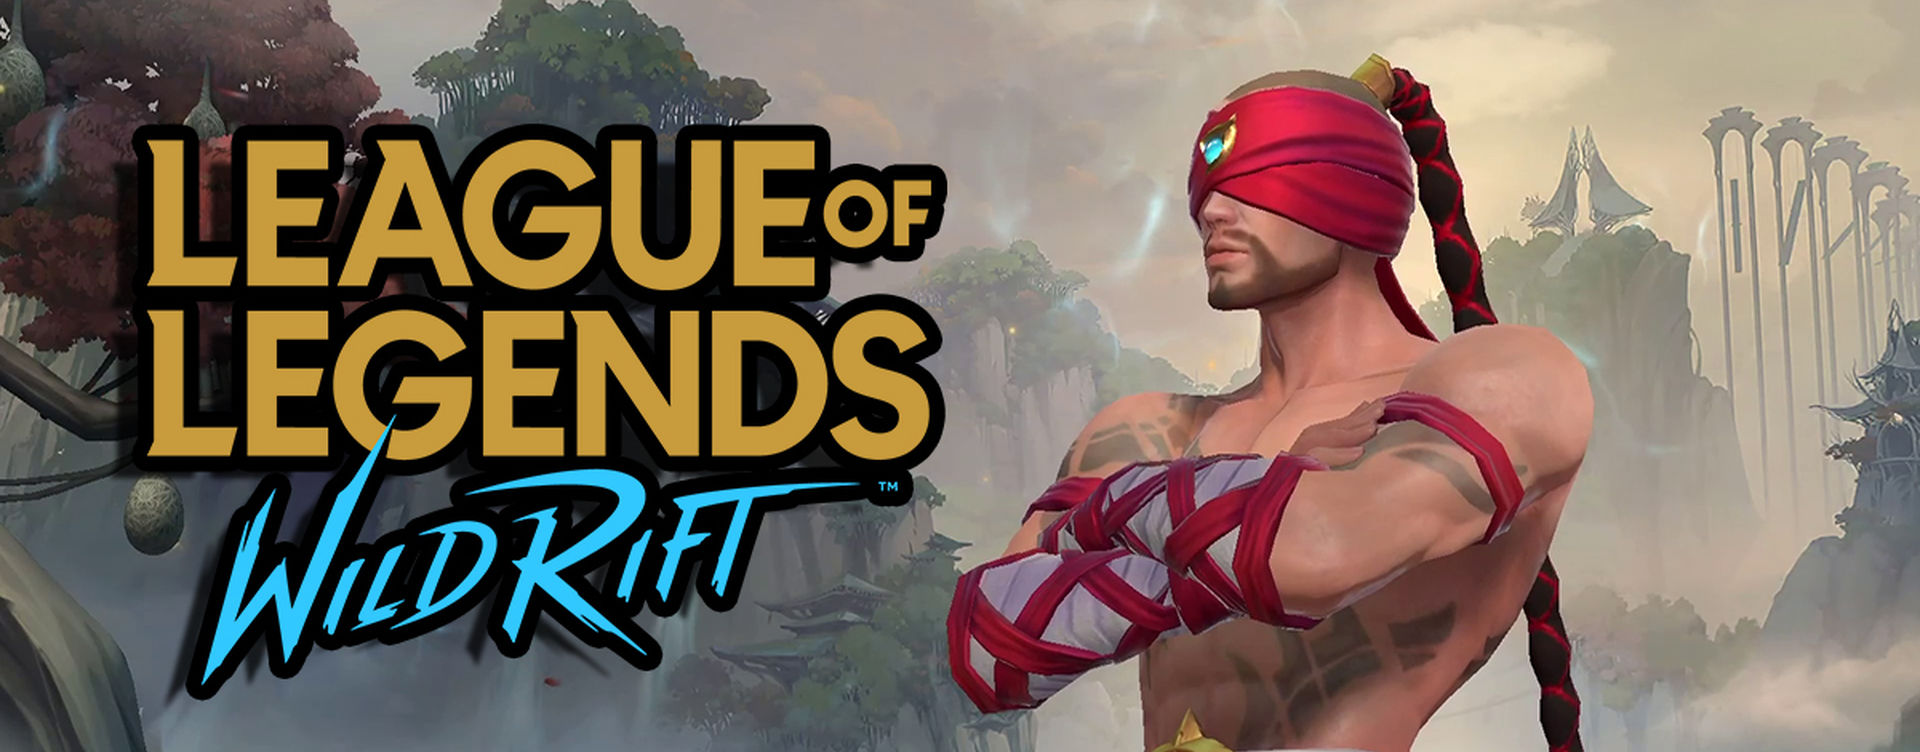 Estos son los requisitos para jugar a League of Legends: Wild Rift en iOS y  Android